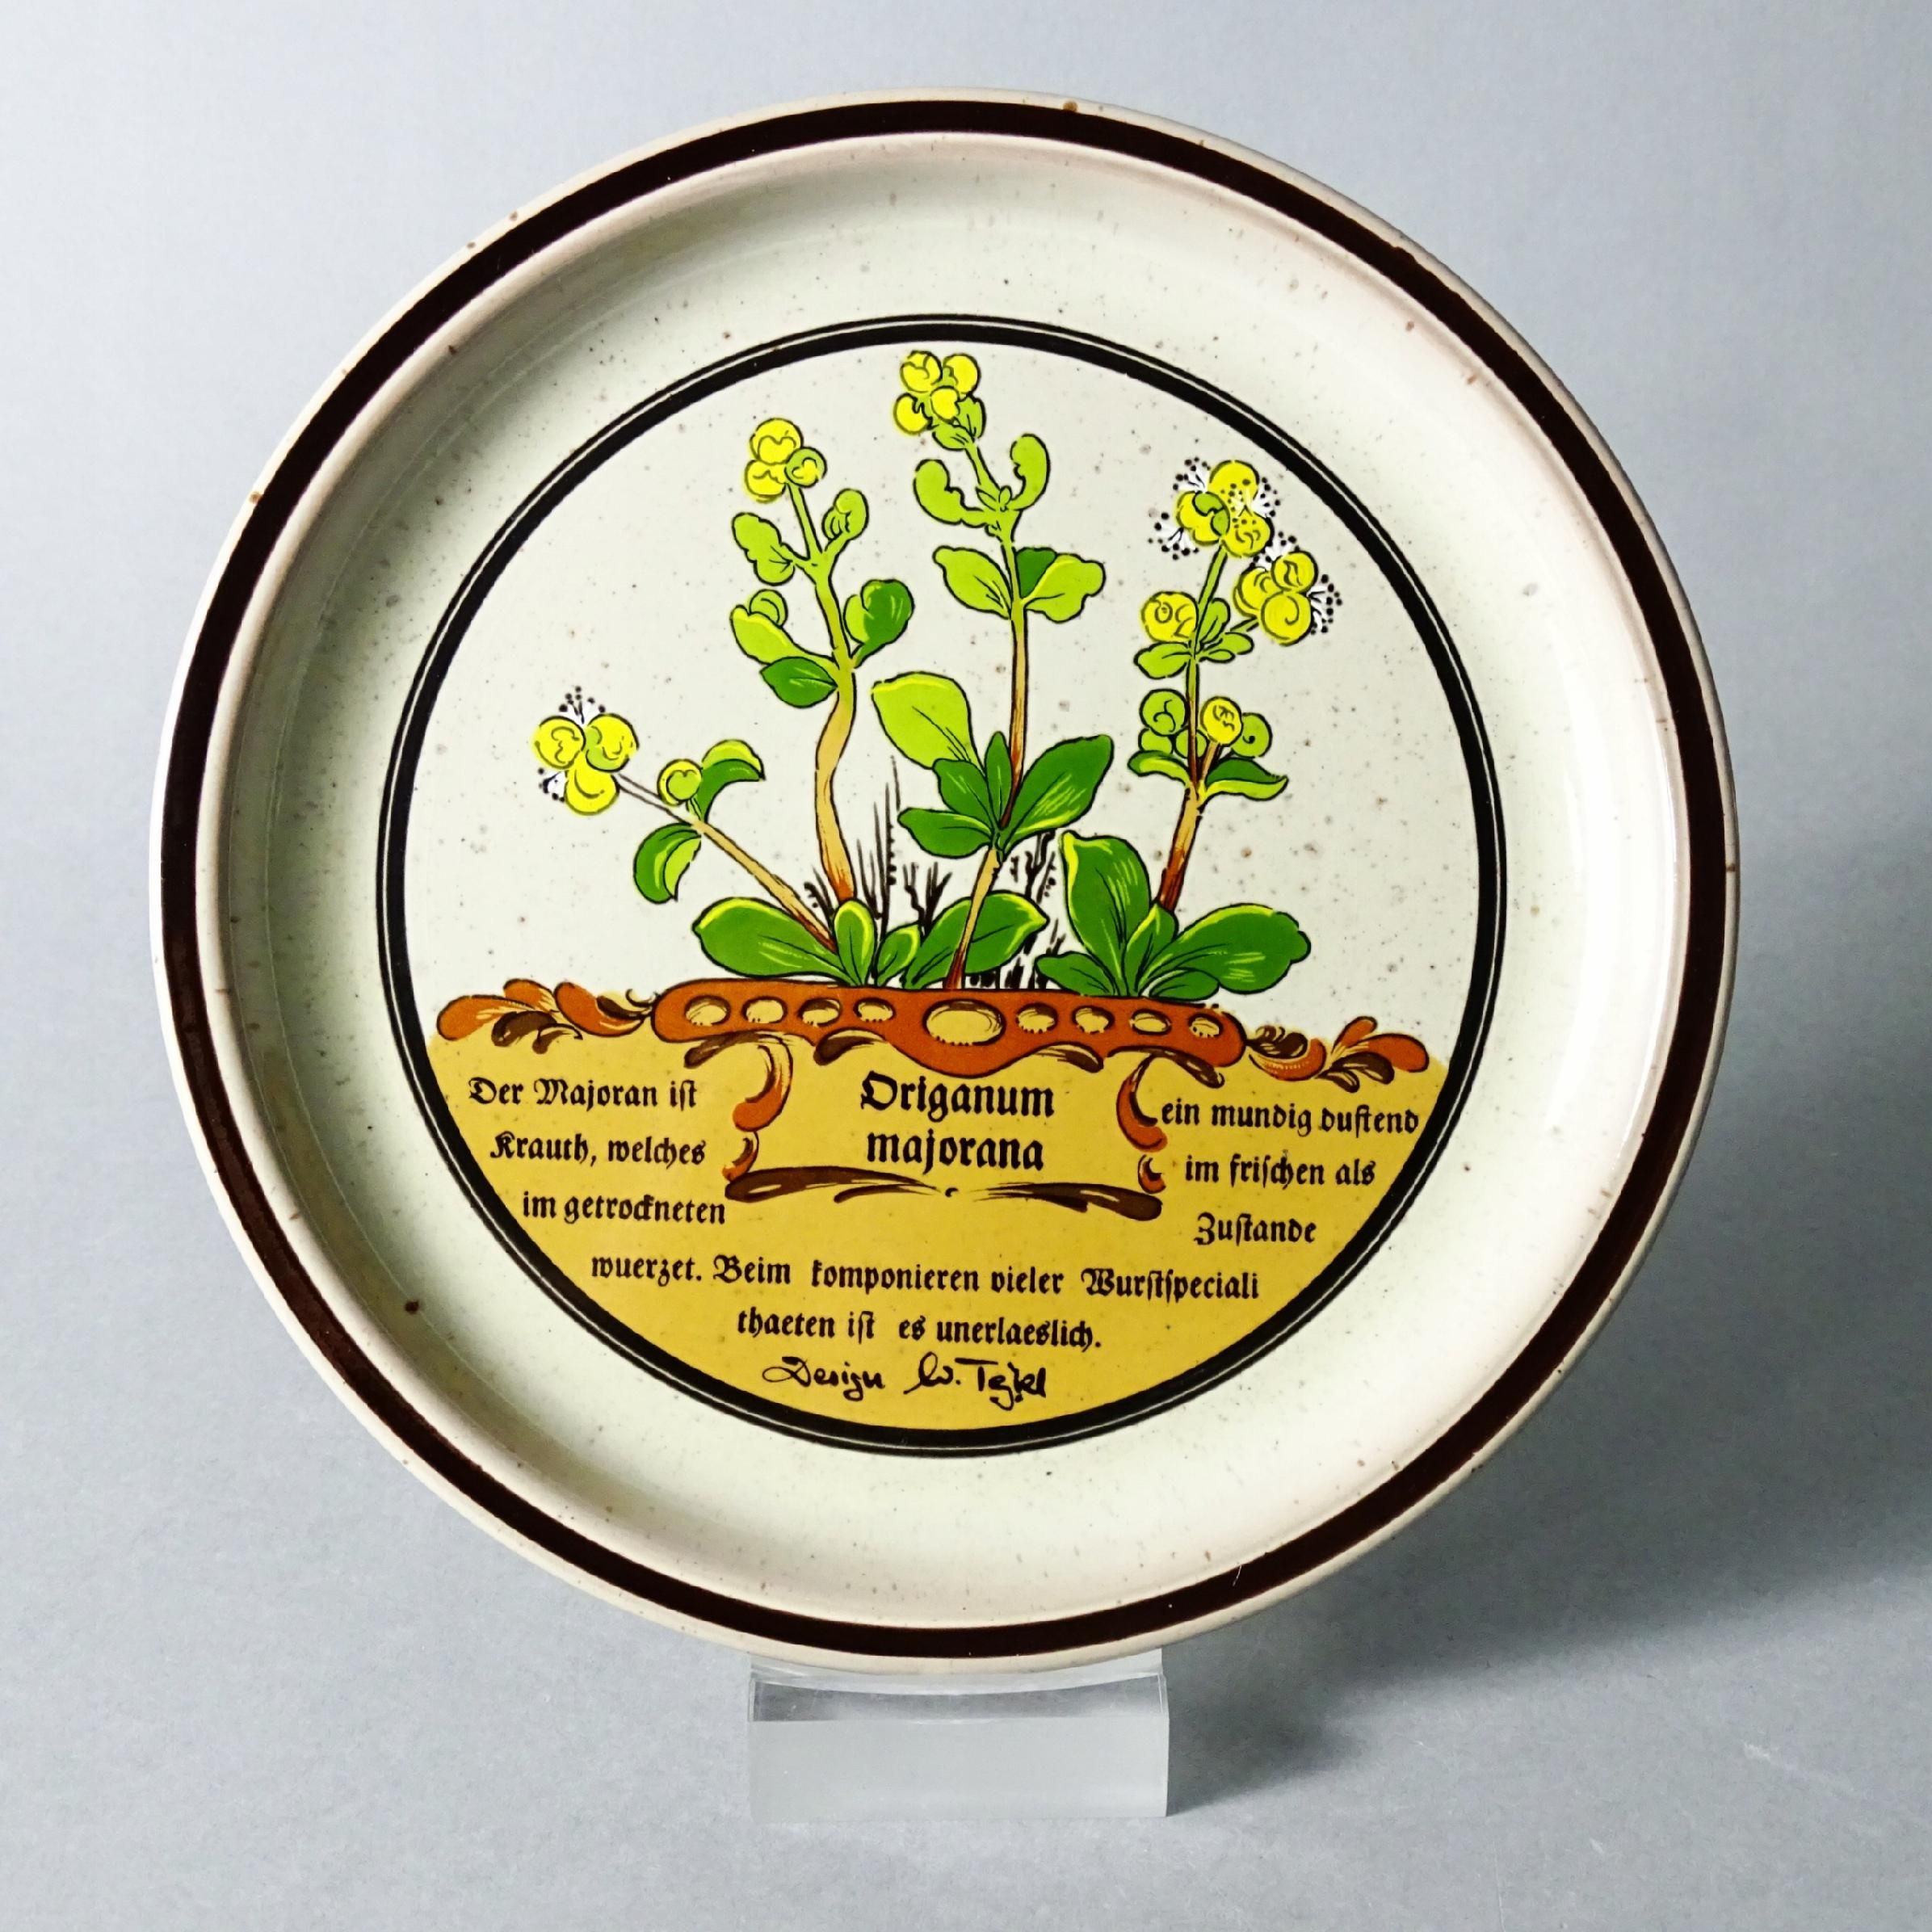 piękny talerz ceramiczny majeranek zioła lata 70/80-te